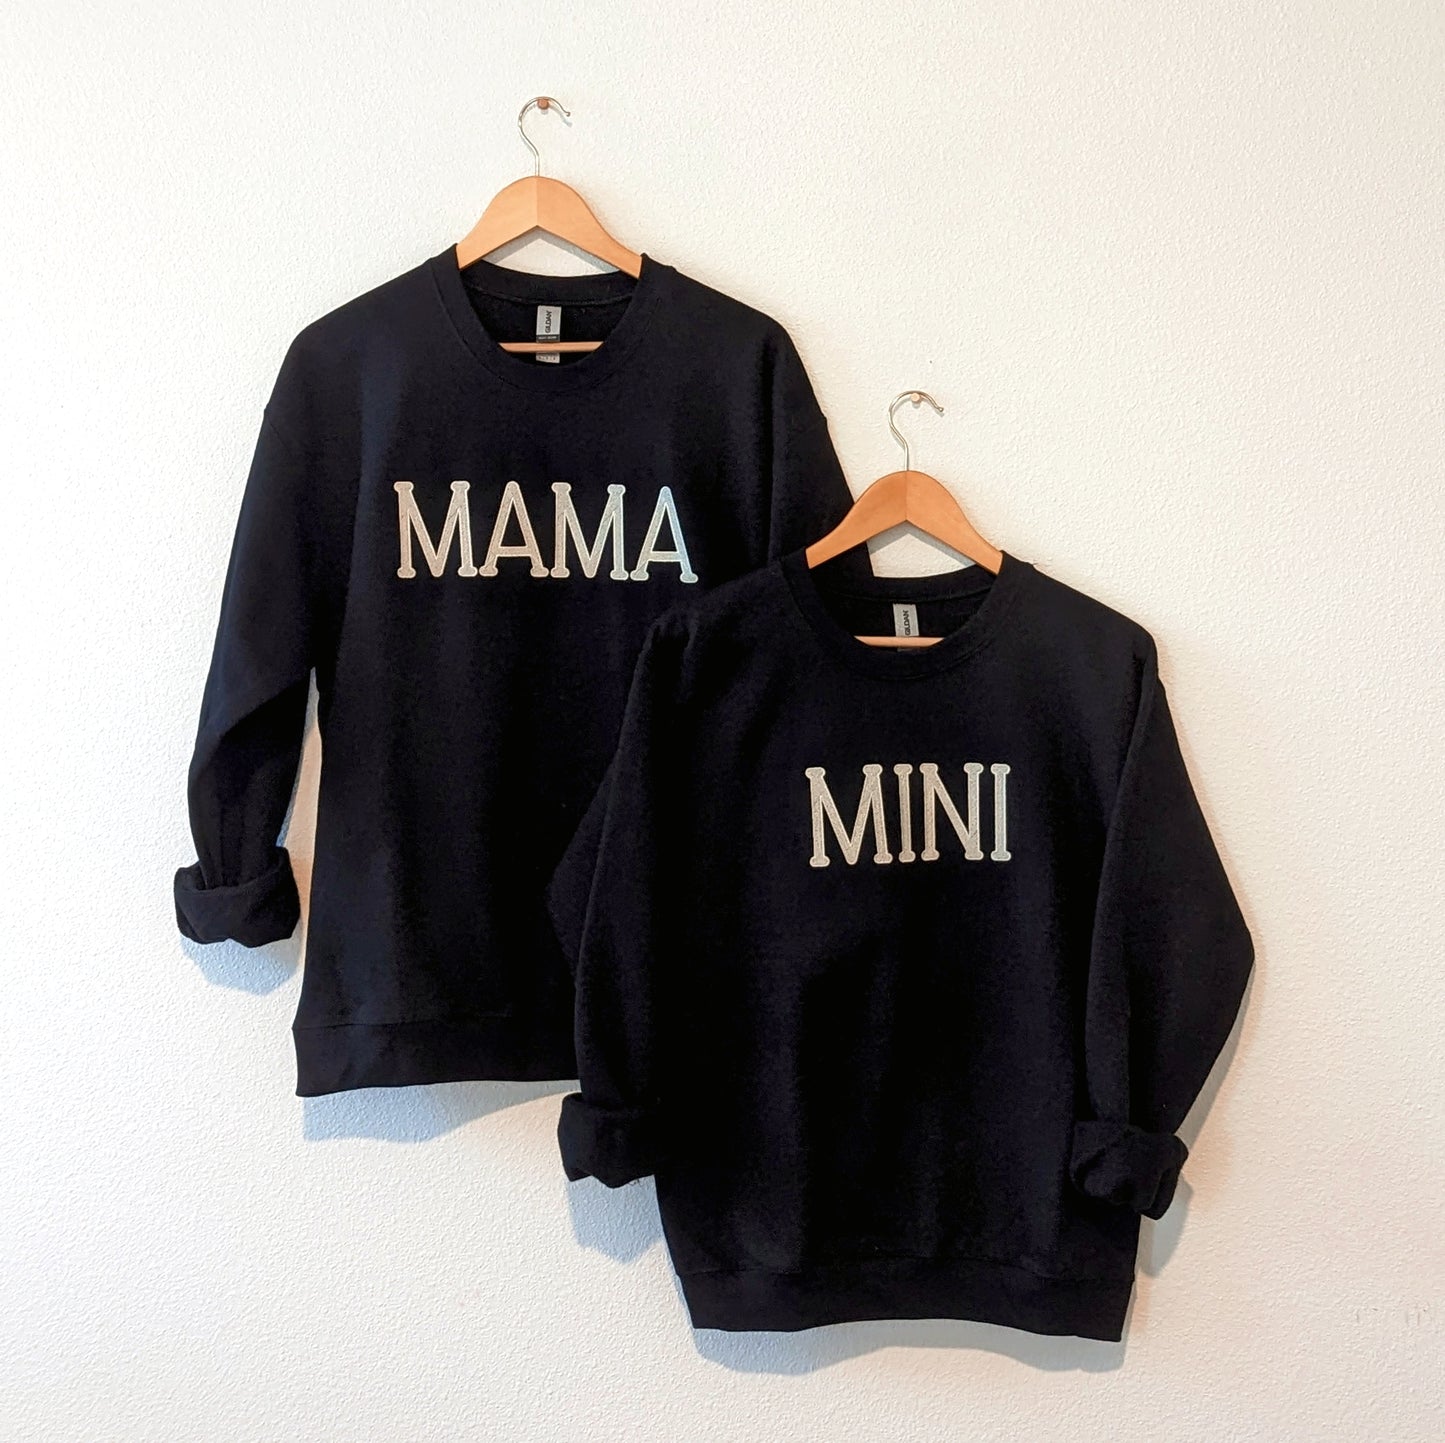 Mama/Mini Sweatshirt